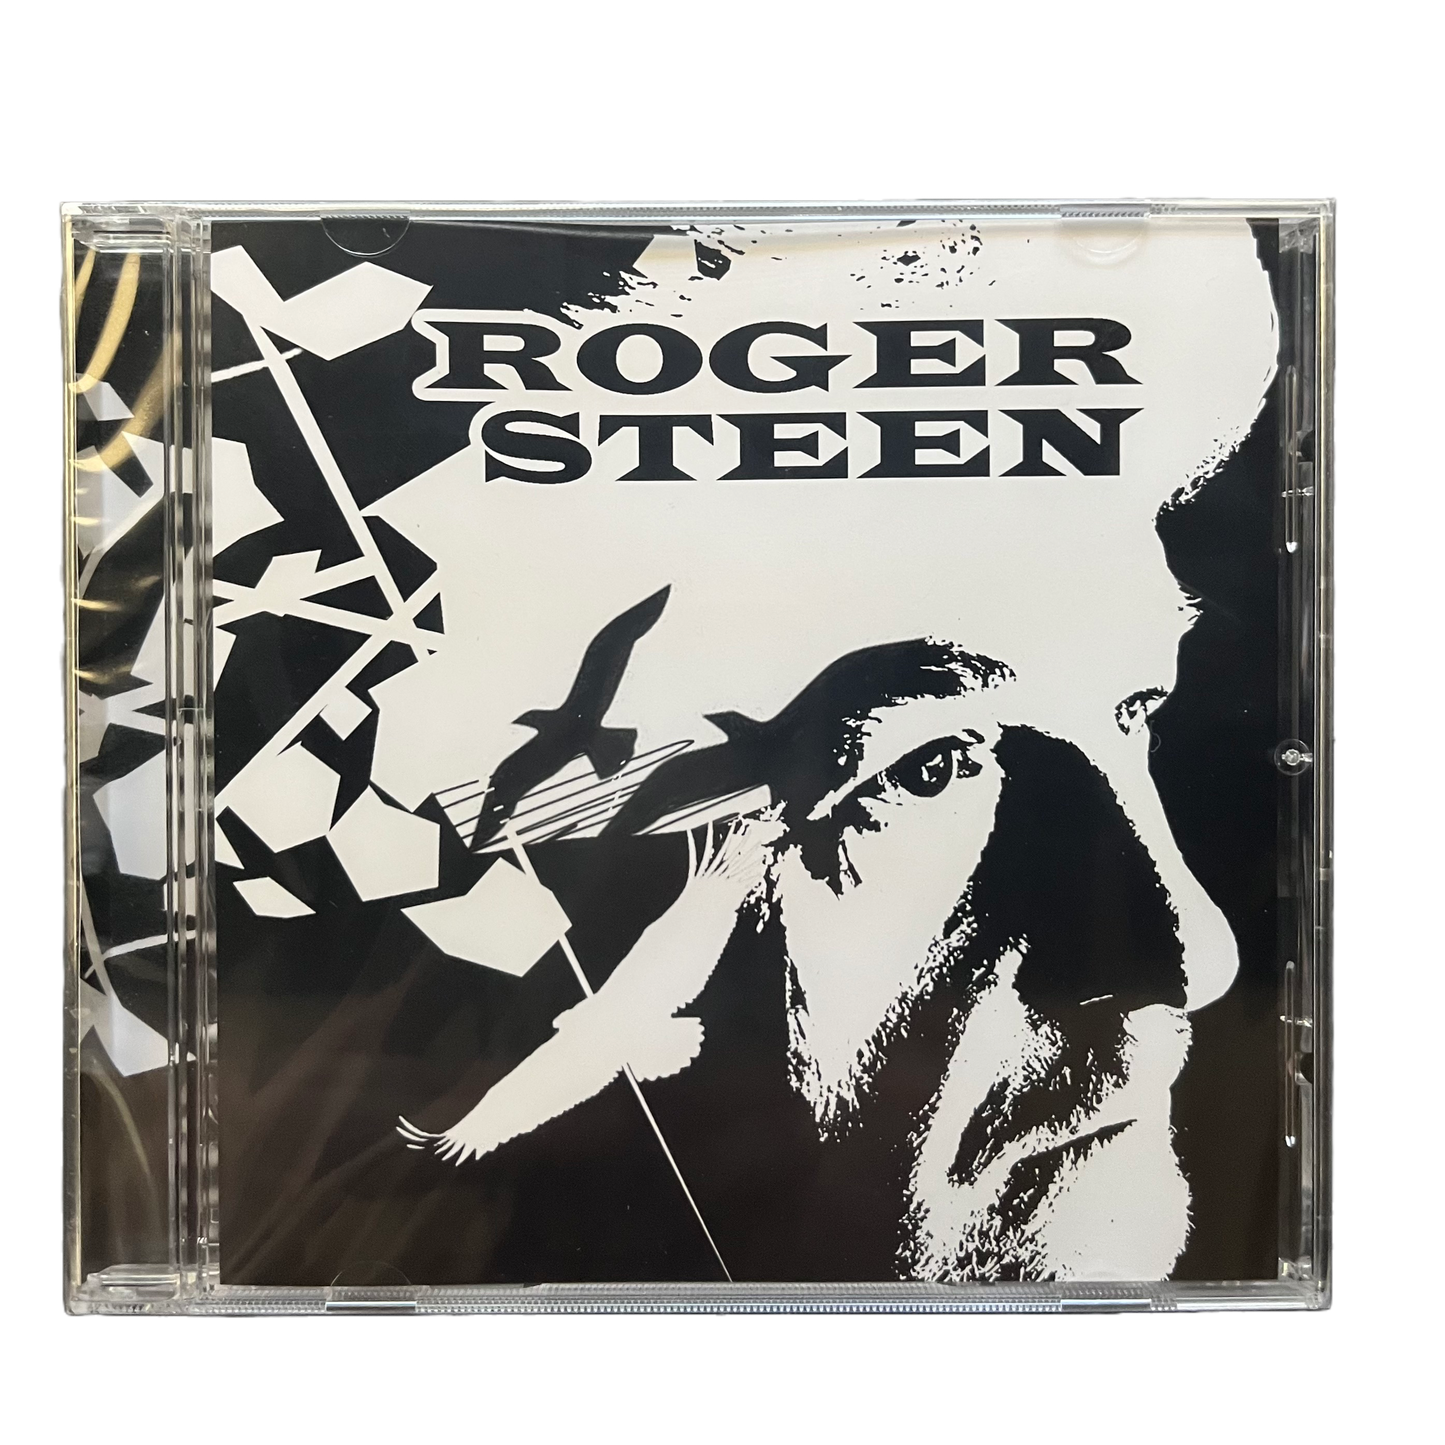 Roger Steen Self-Titled Album CD